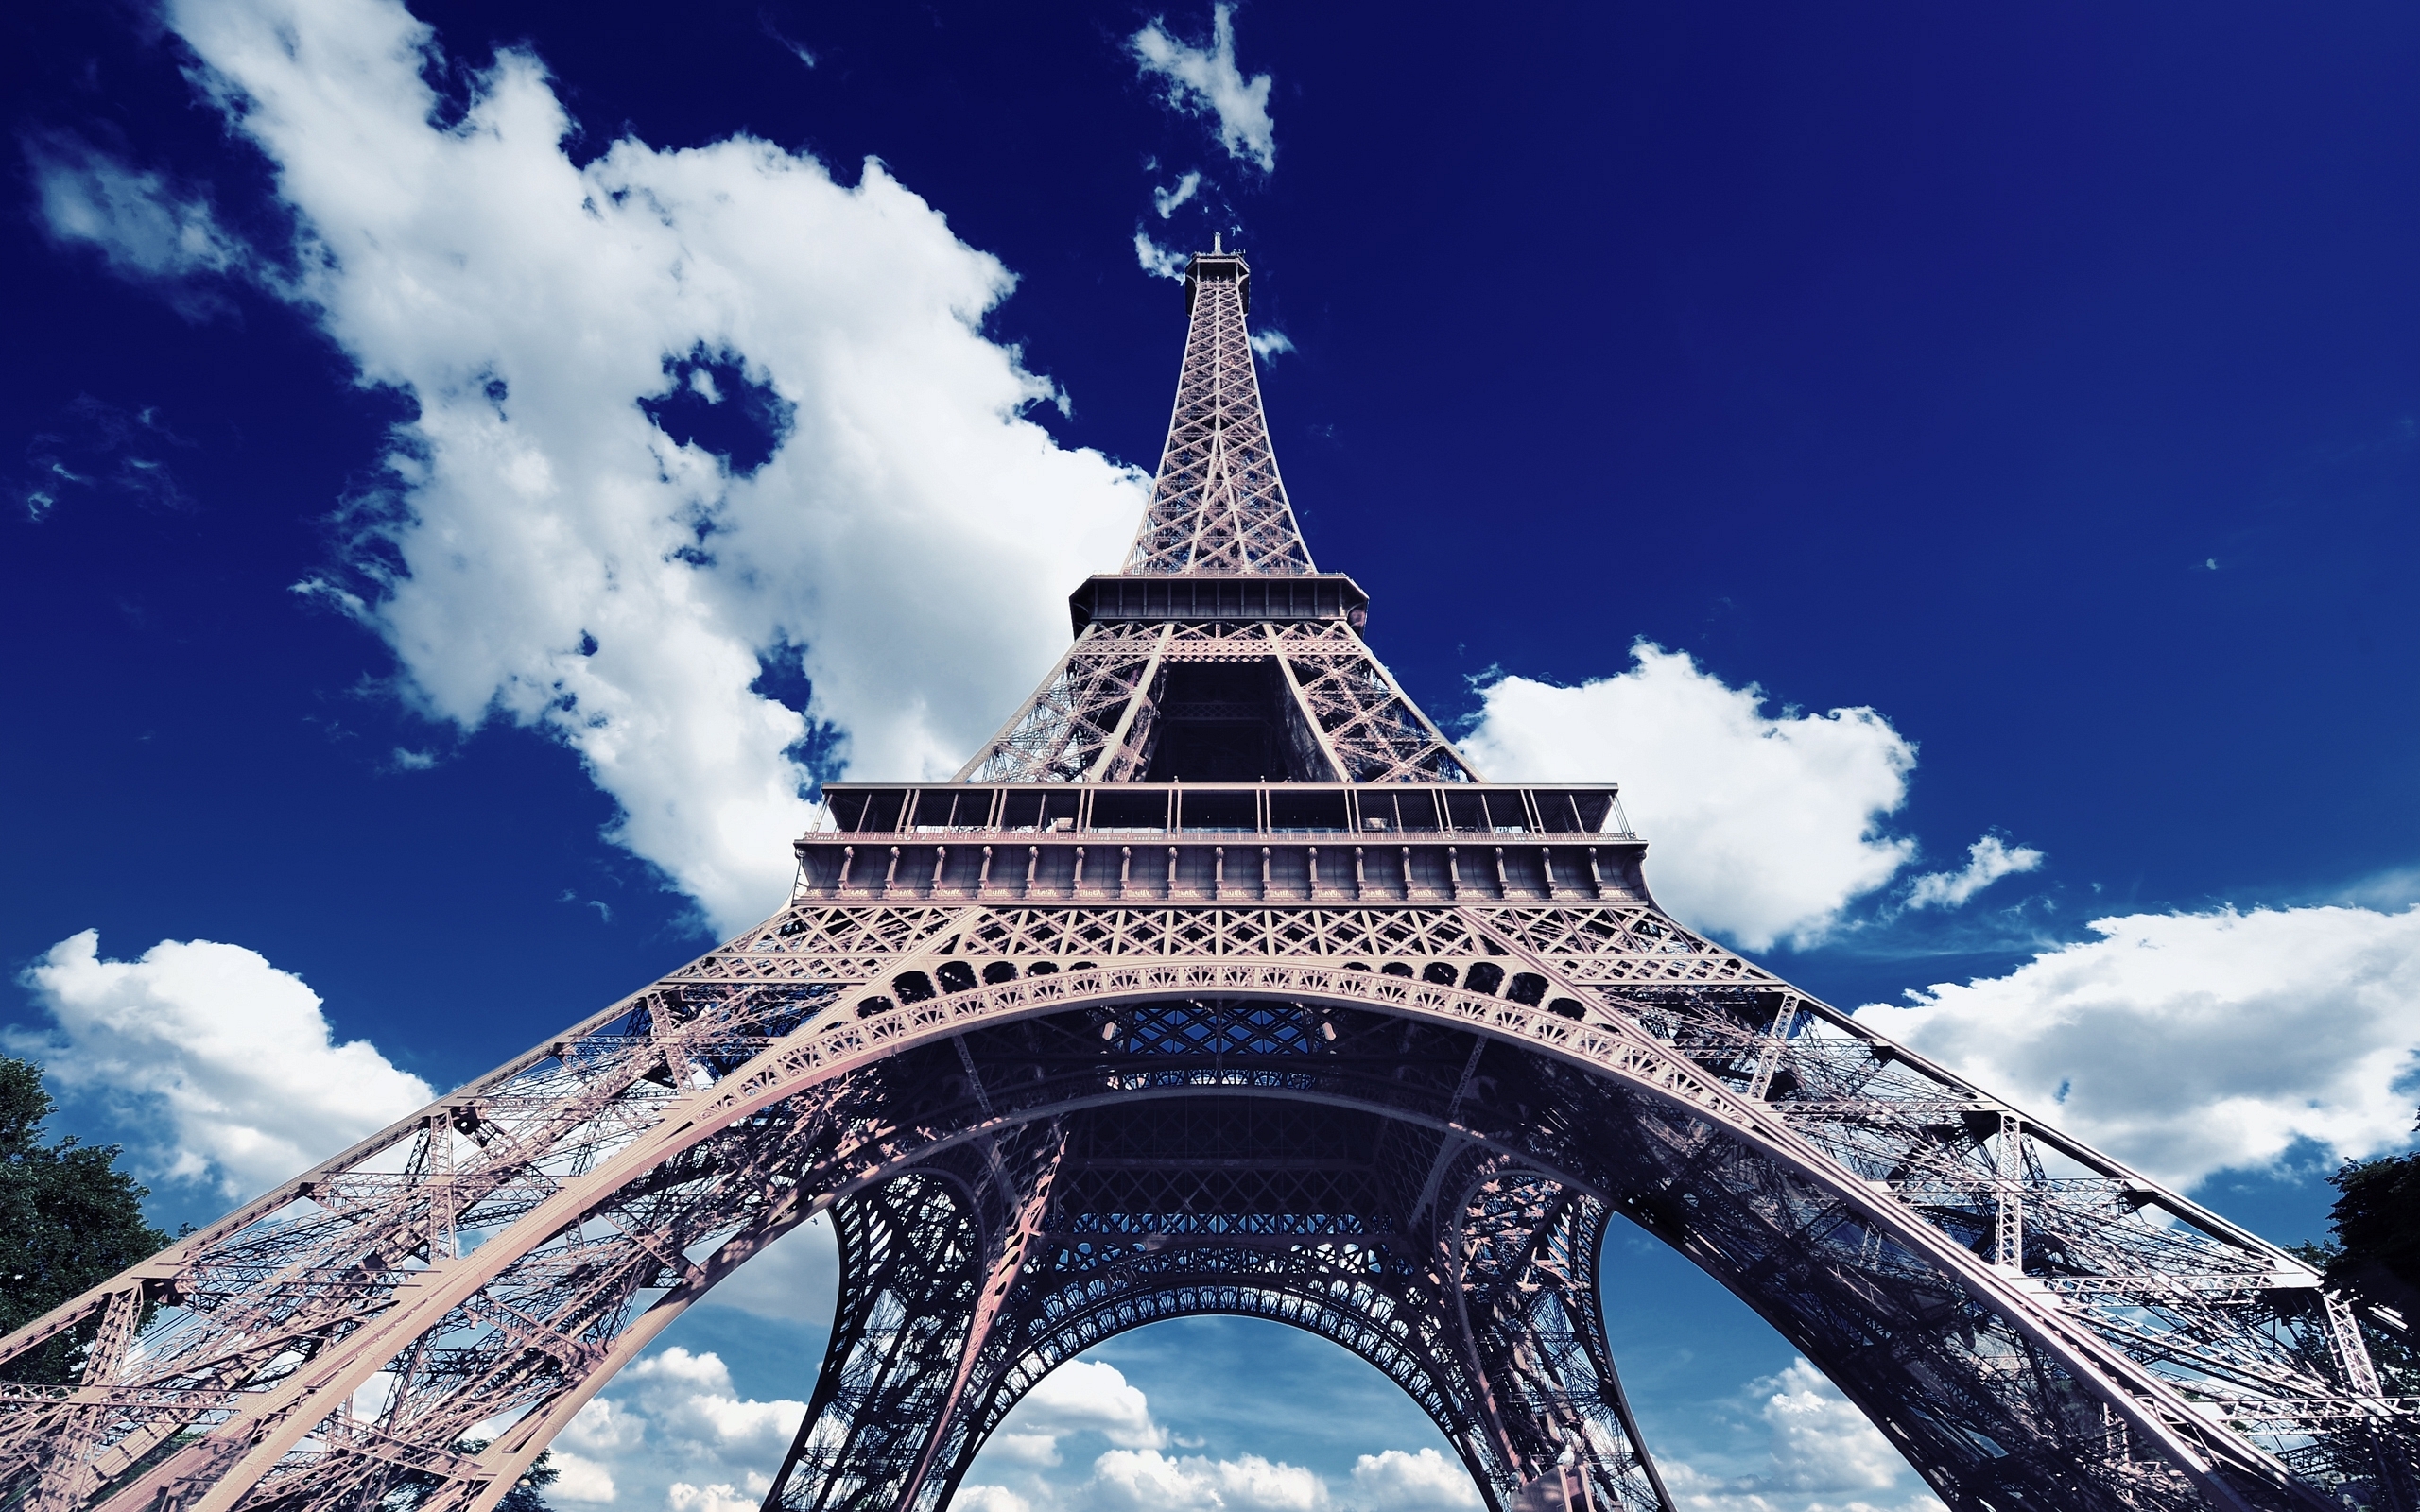 Красивые картины на телефон. Франция Париж Эйфелева башня. Эльфовая башня э. Эйфелева башня. Г. А. Эйфель. Париж на фоне эльфовой башни.